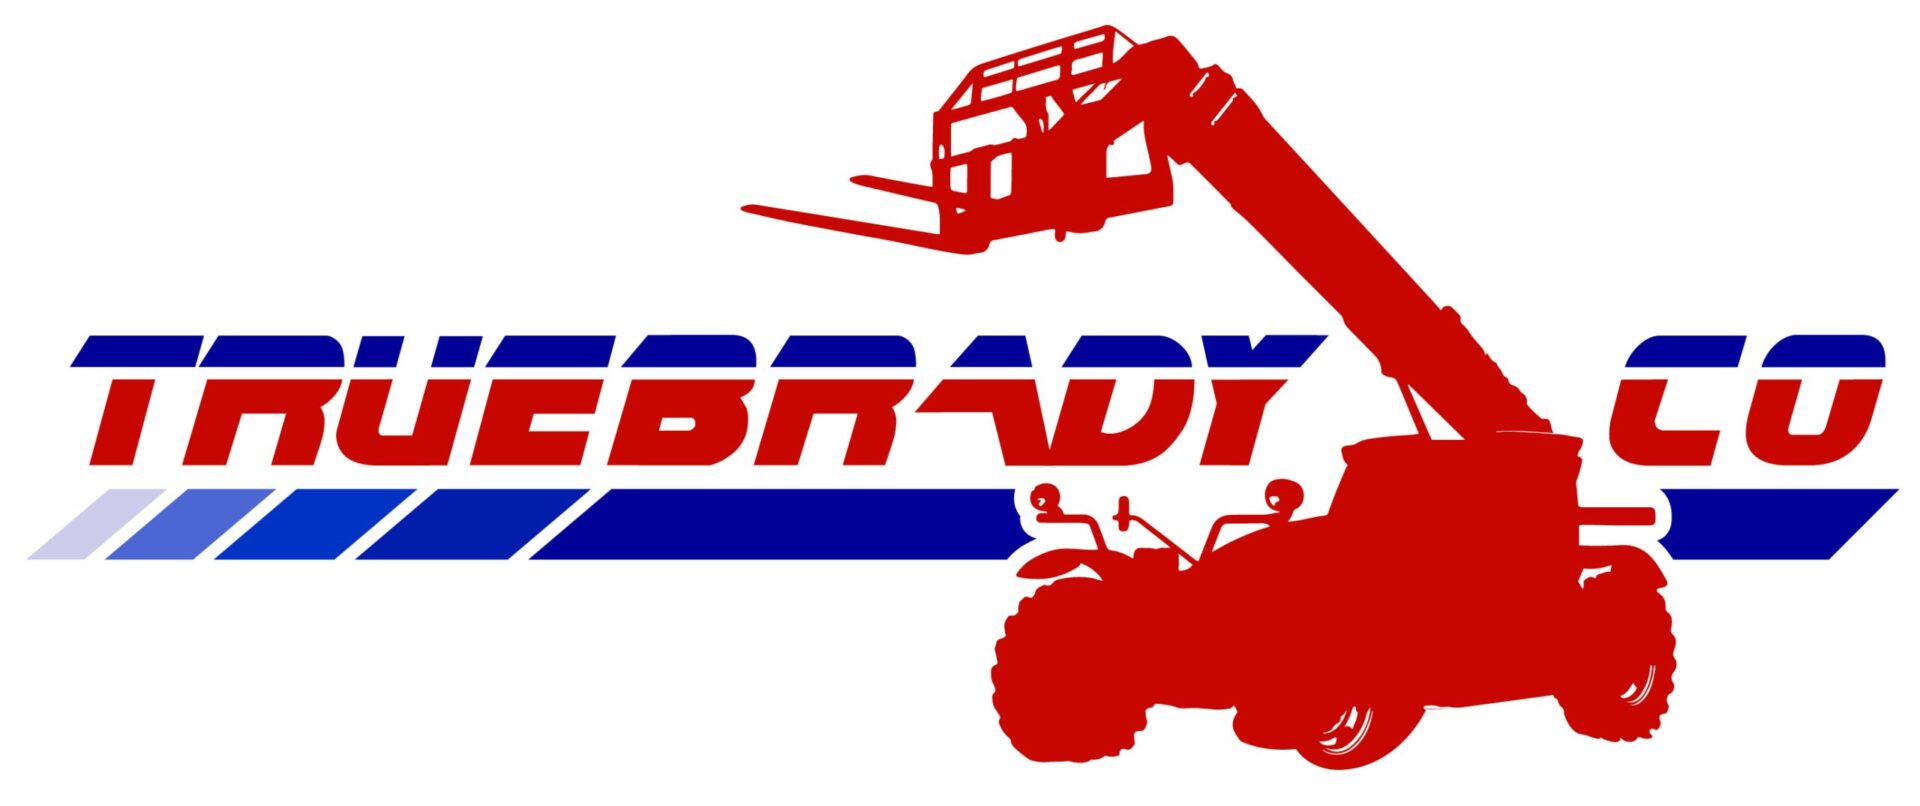 TrueBrady logo